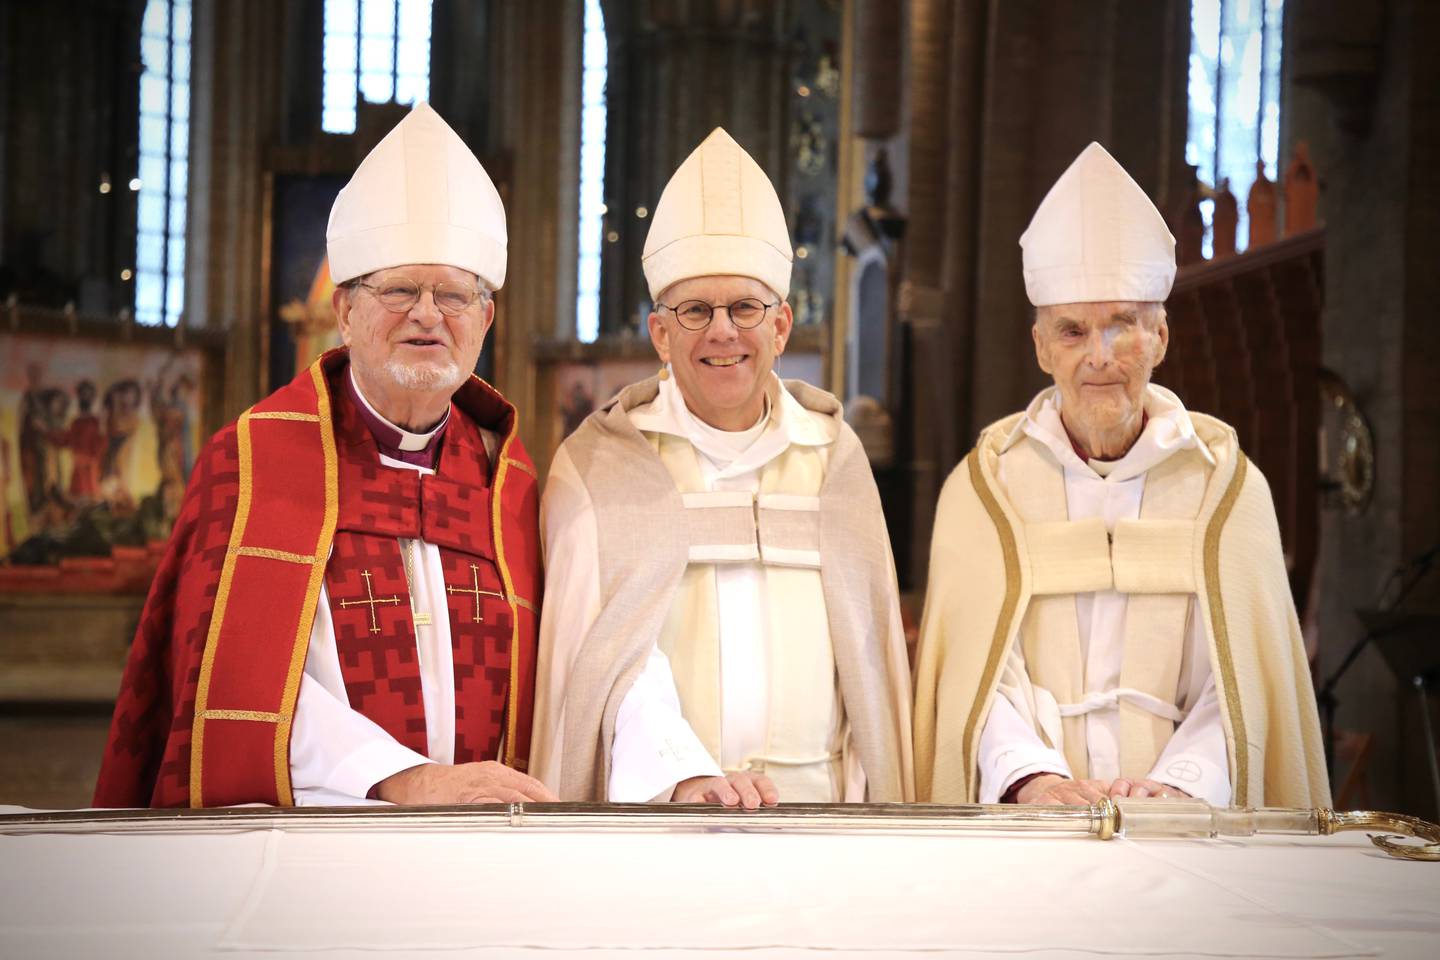 Martin Lind, Martin Modéus och Martin Lönnebo, tre biskopar i Linköpings stift, vid gudstjänst där Martin Modéus lägger ned staven för att vandra vidare mot att bli ärkebiskop.